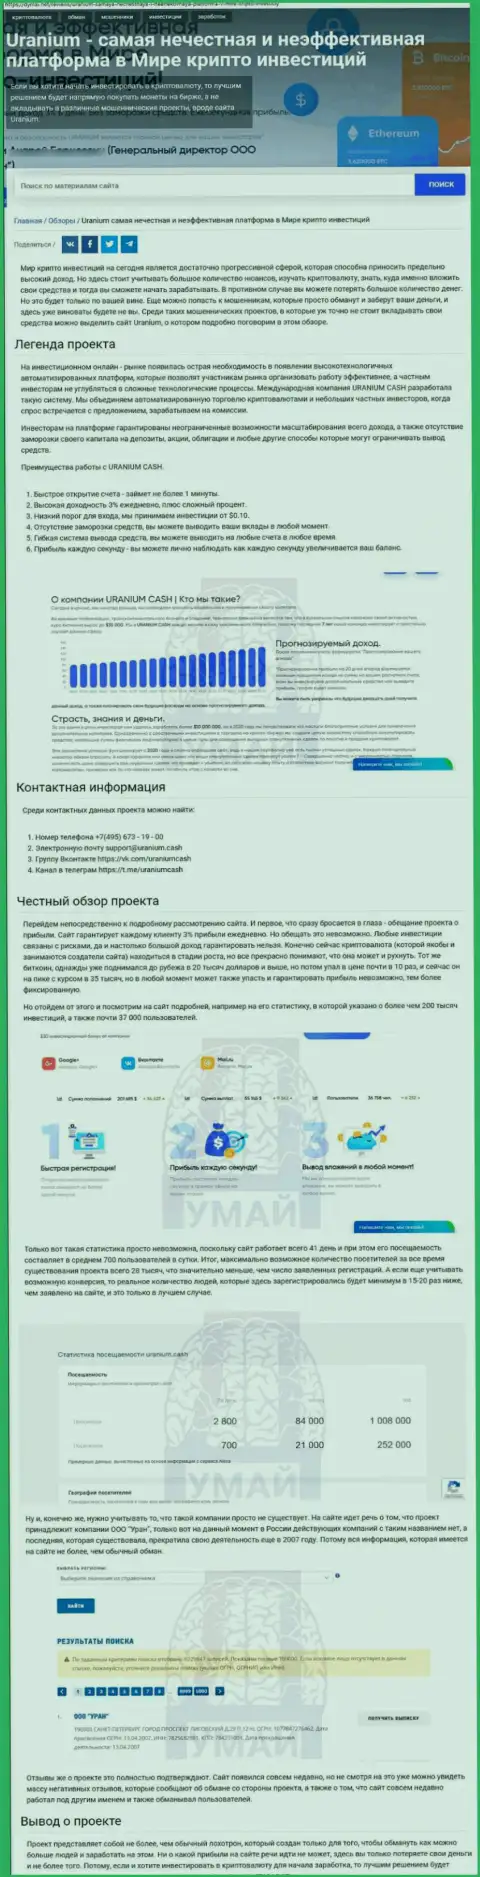 Обзорная публикация об мошеннических условиях взаимодействия в организации ООО Уран